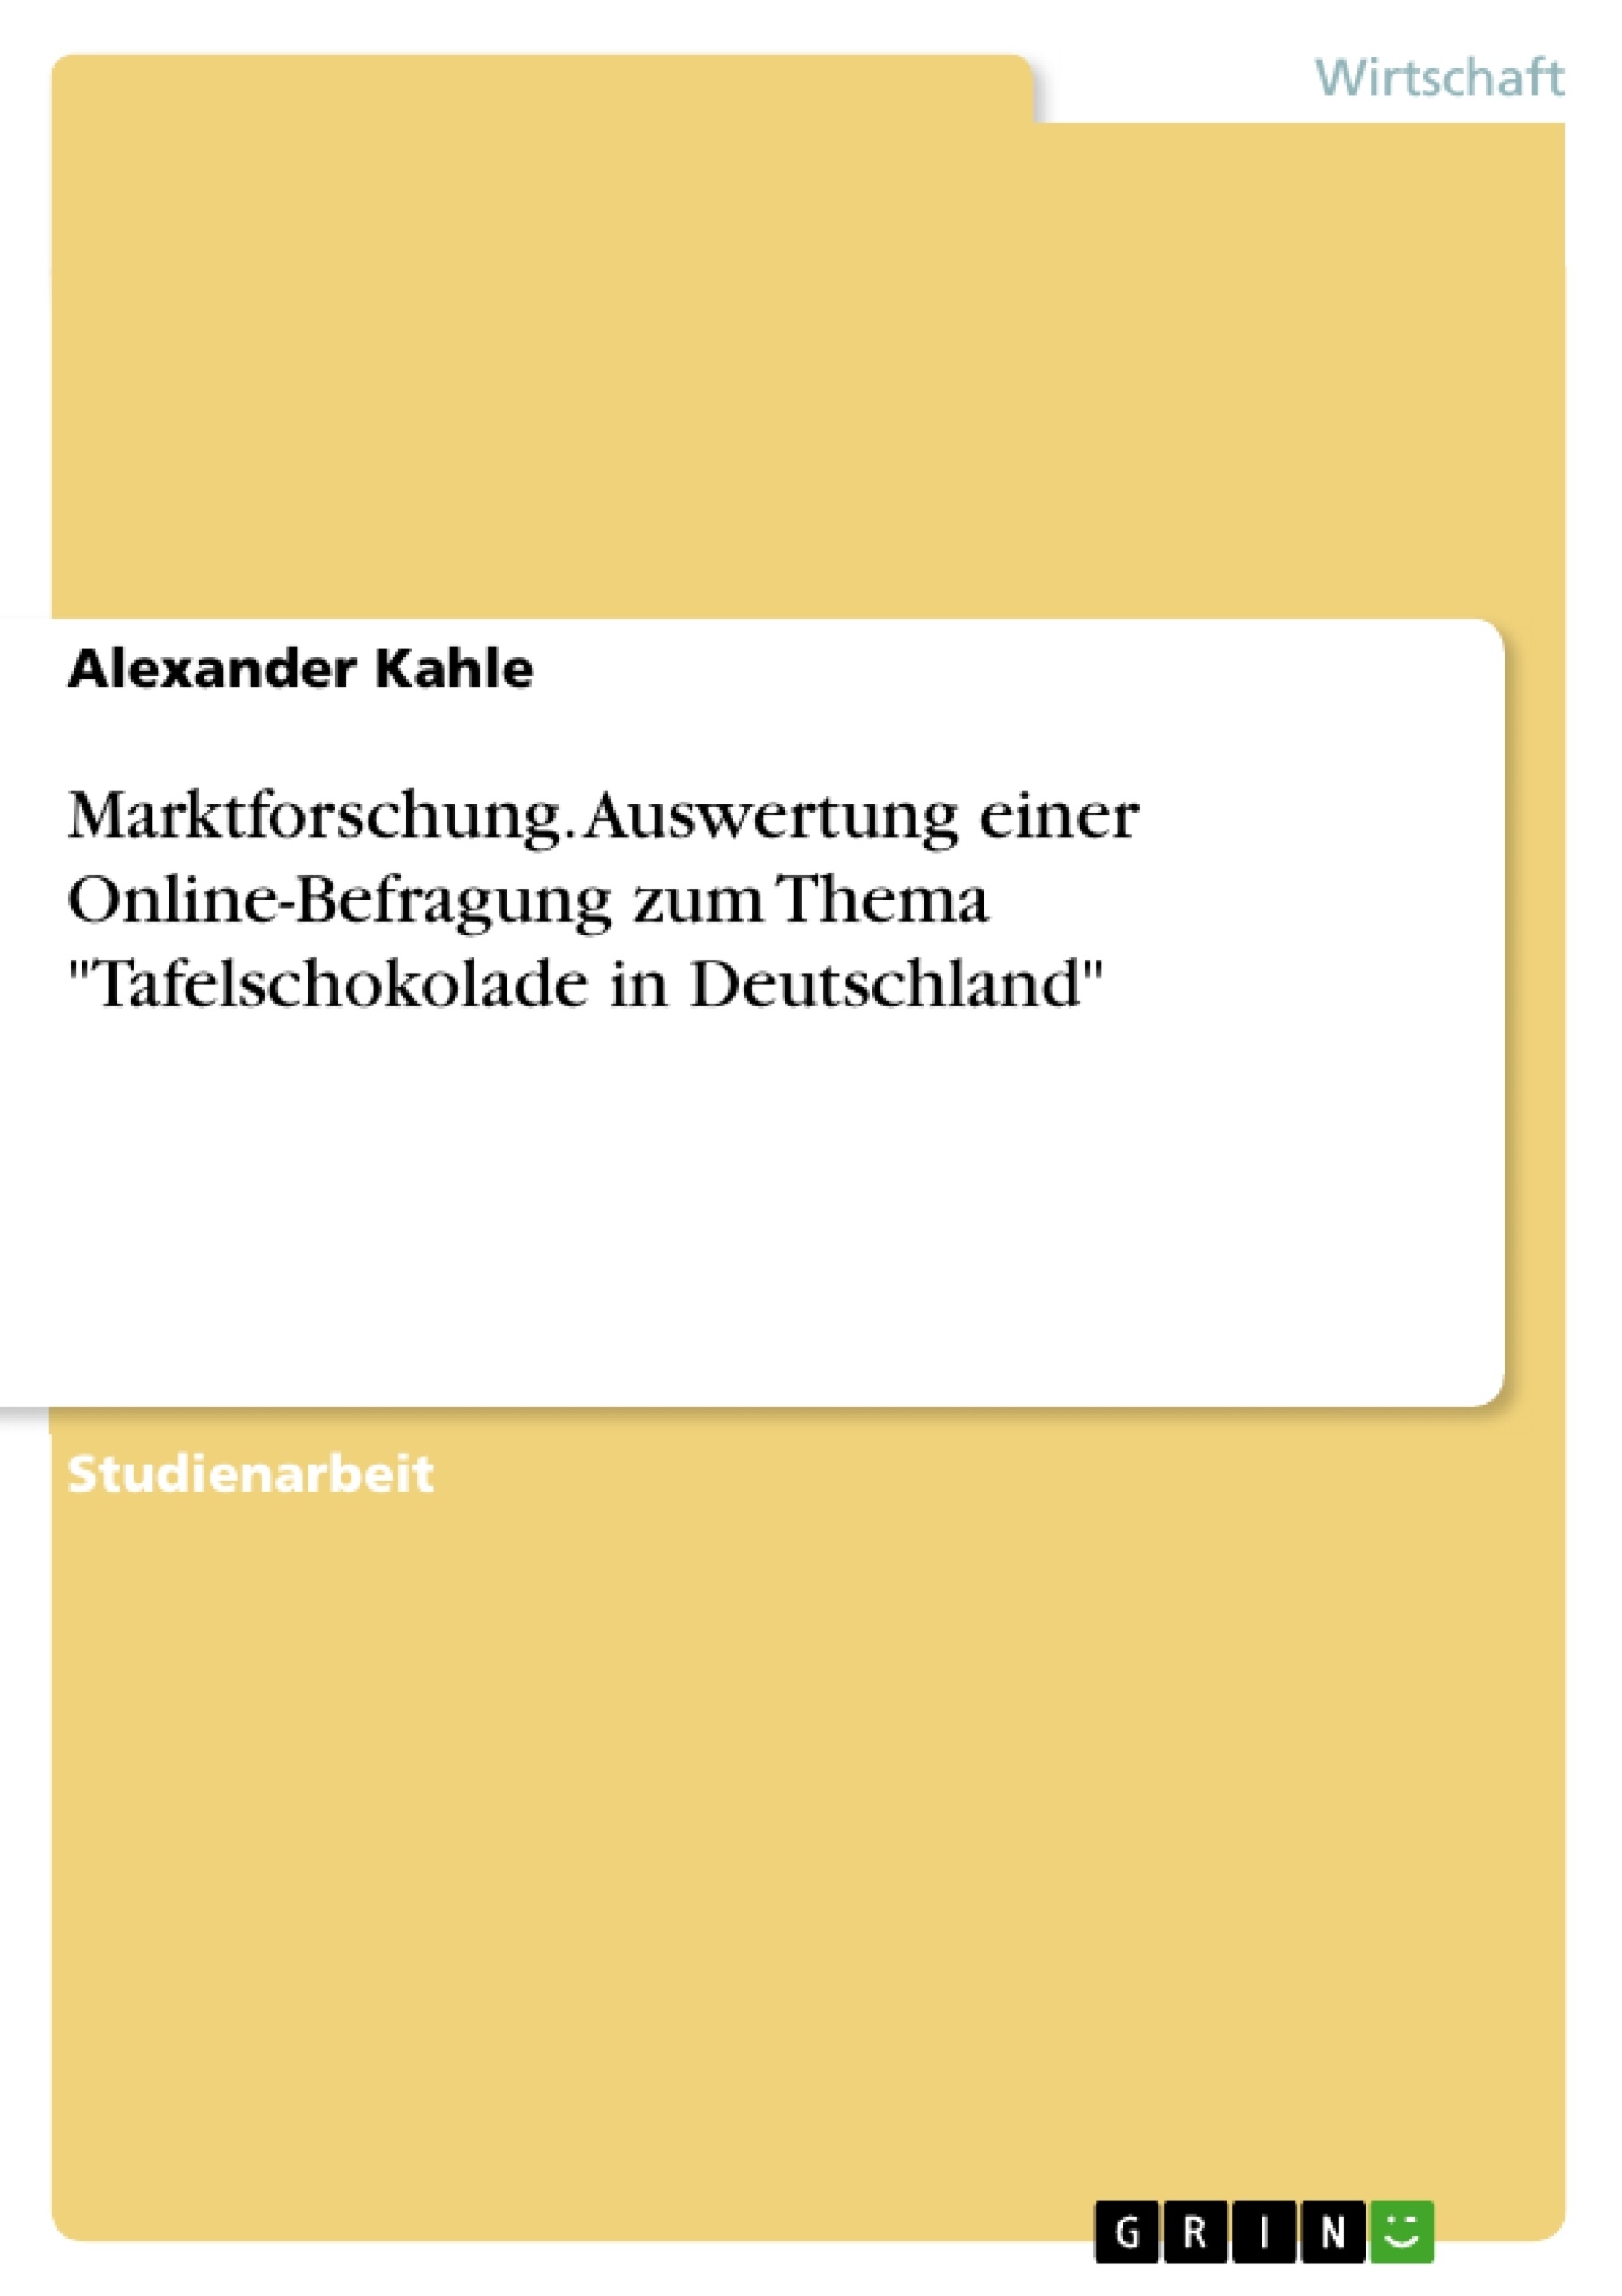 Titre: Marktforschung. Auswertung einer Online-Befragung zum Thema "Tafelschokolade in Deutschland"